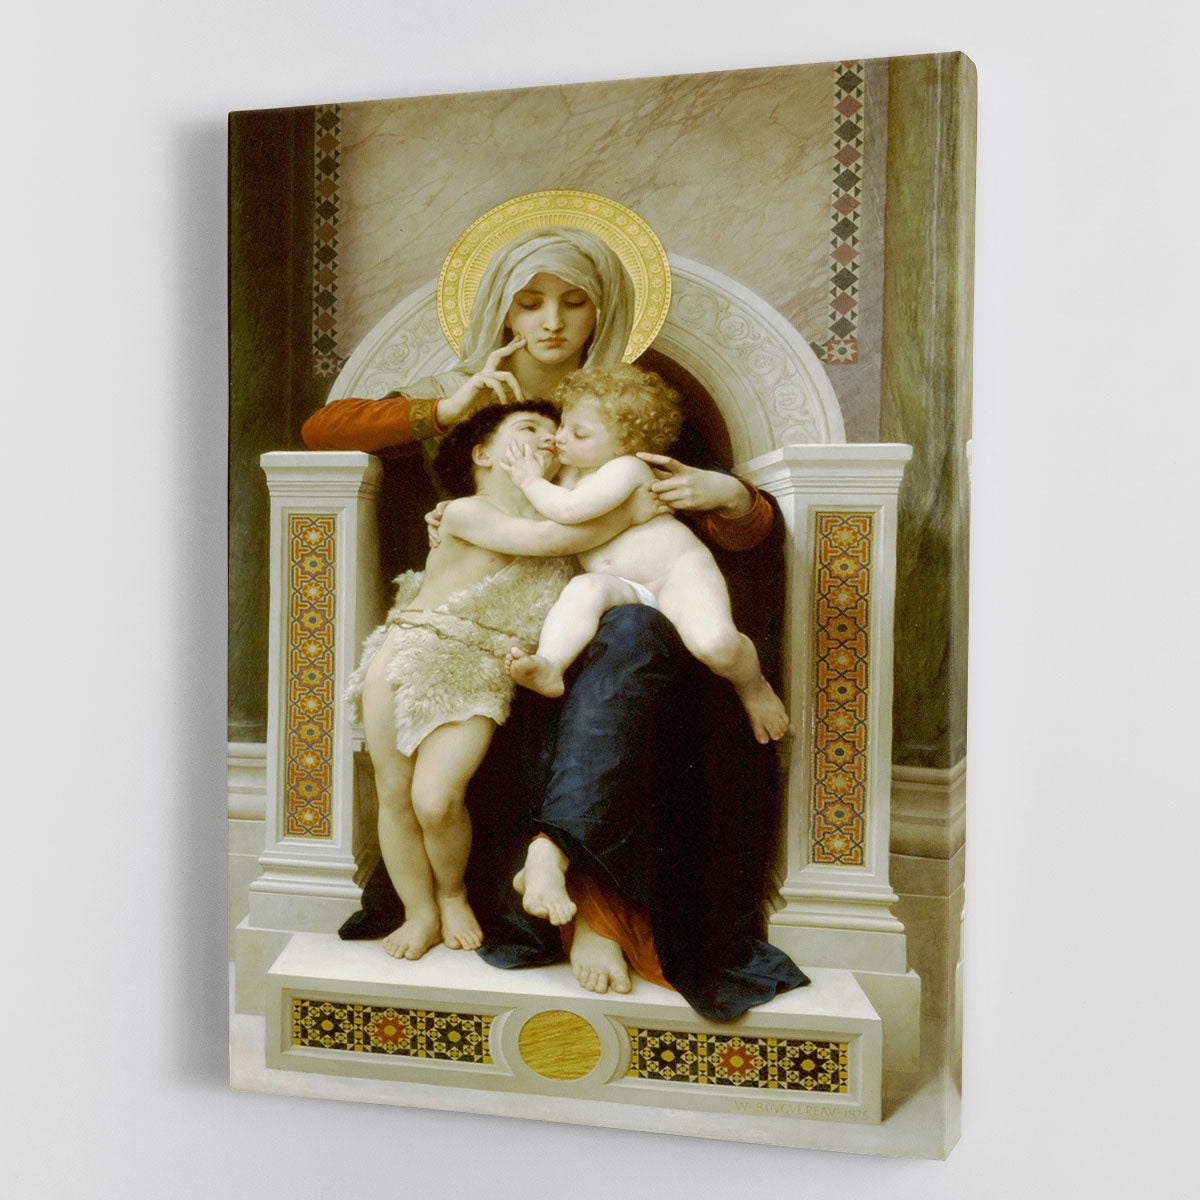 Vierge-Jesus SaintJeanBaptiste 1875 By Bouguereau Canvas Print or Poster - Canvas Art Rocks - 1